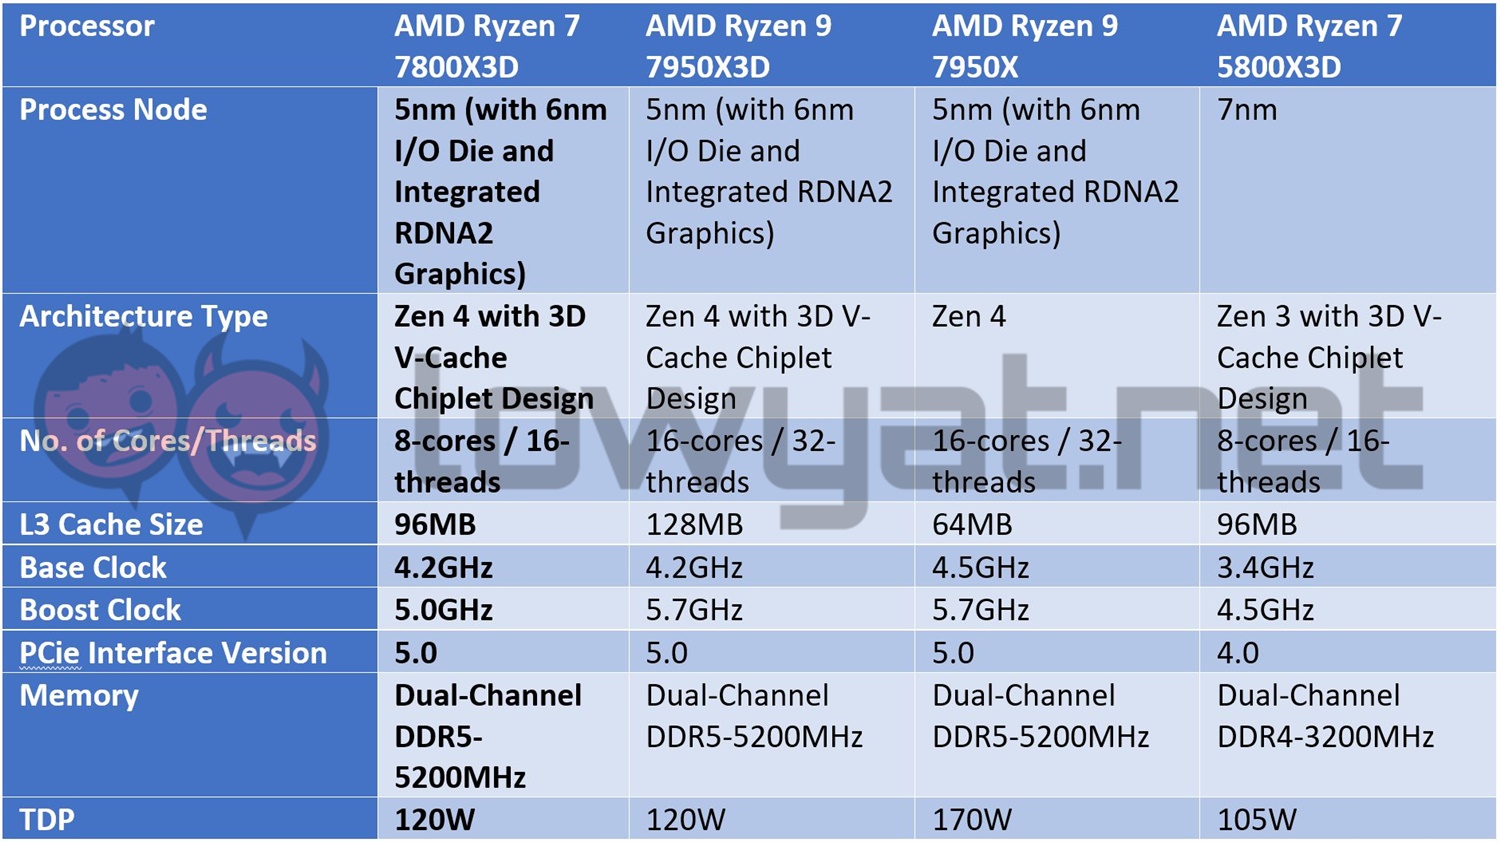 AMD Ryzen 7 7800X3D CPU review